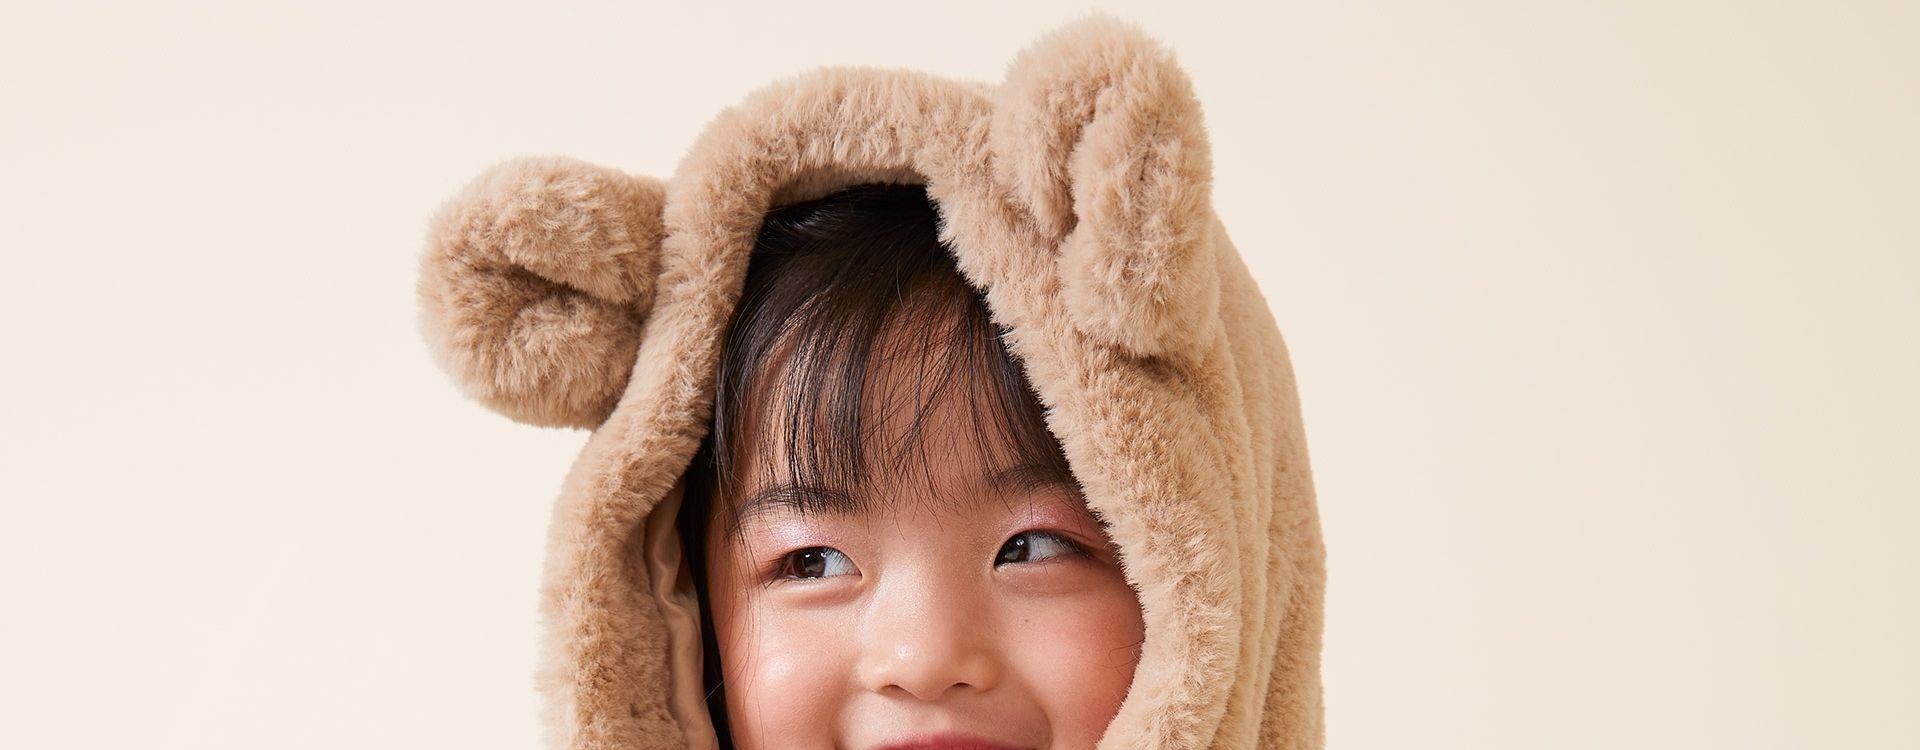 O que fazer quando a criança quer usar roupas curtas no frio? - Revista  Crescer